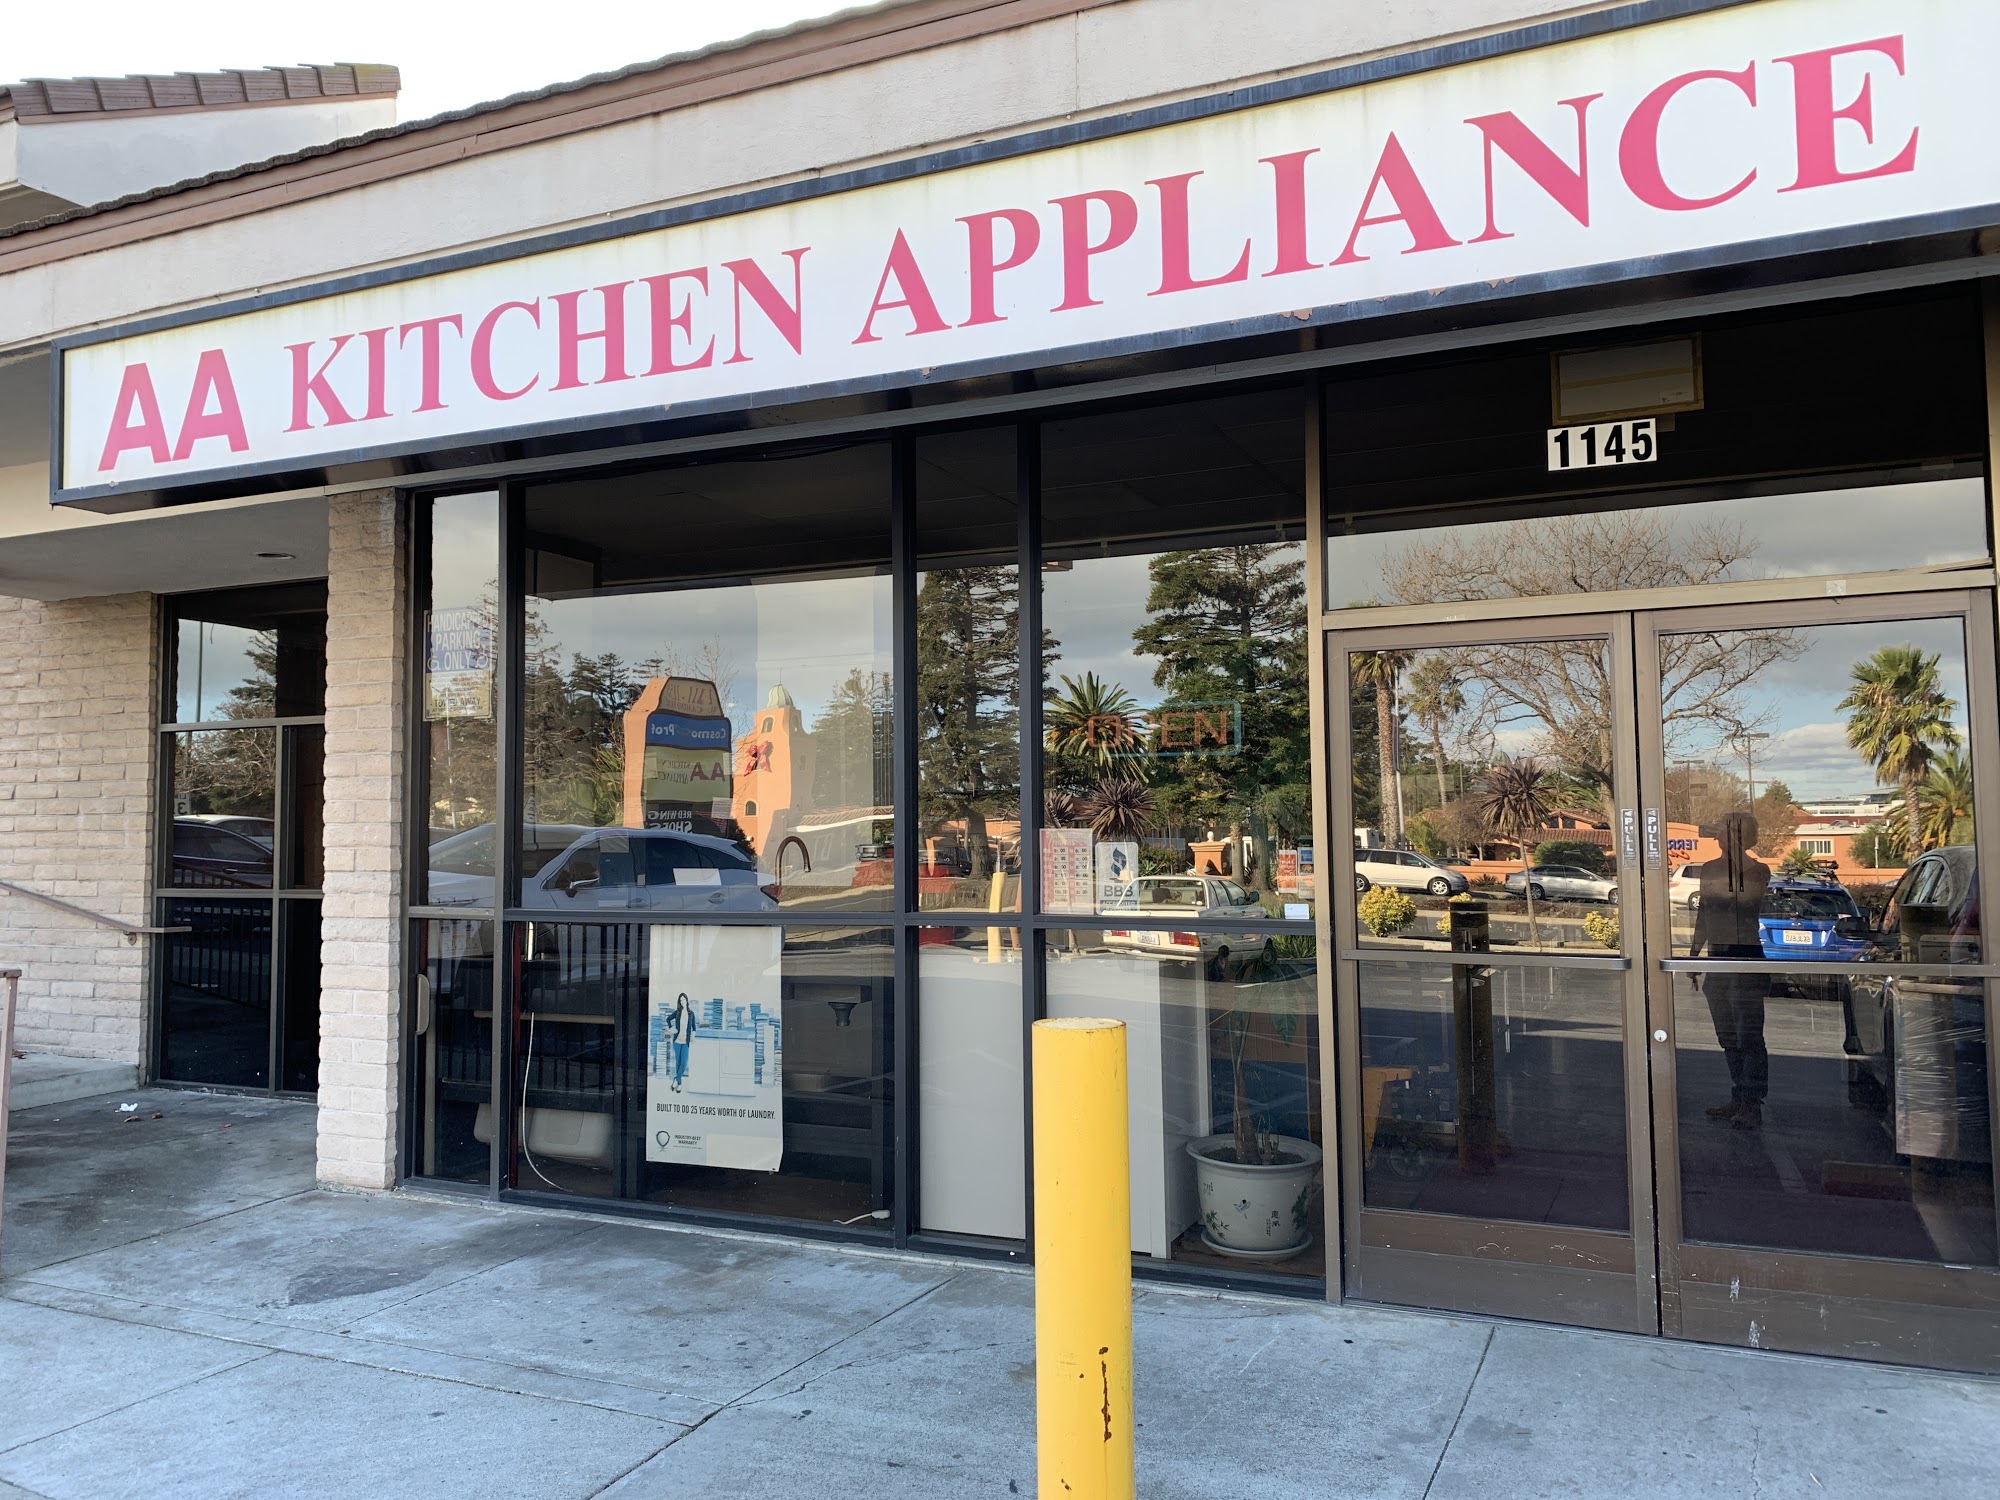 AA Kitchen Appliance, Inc.